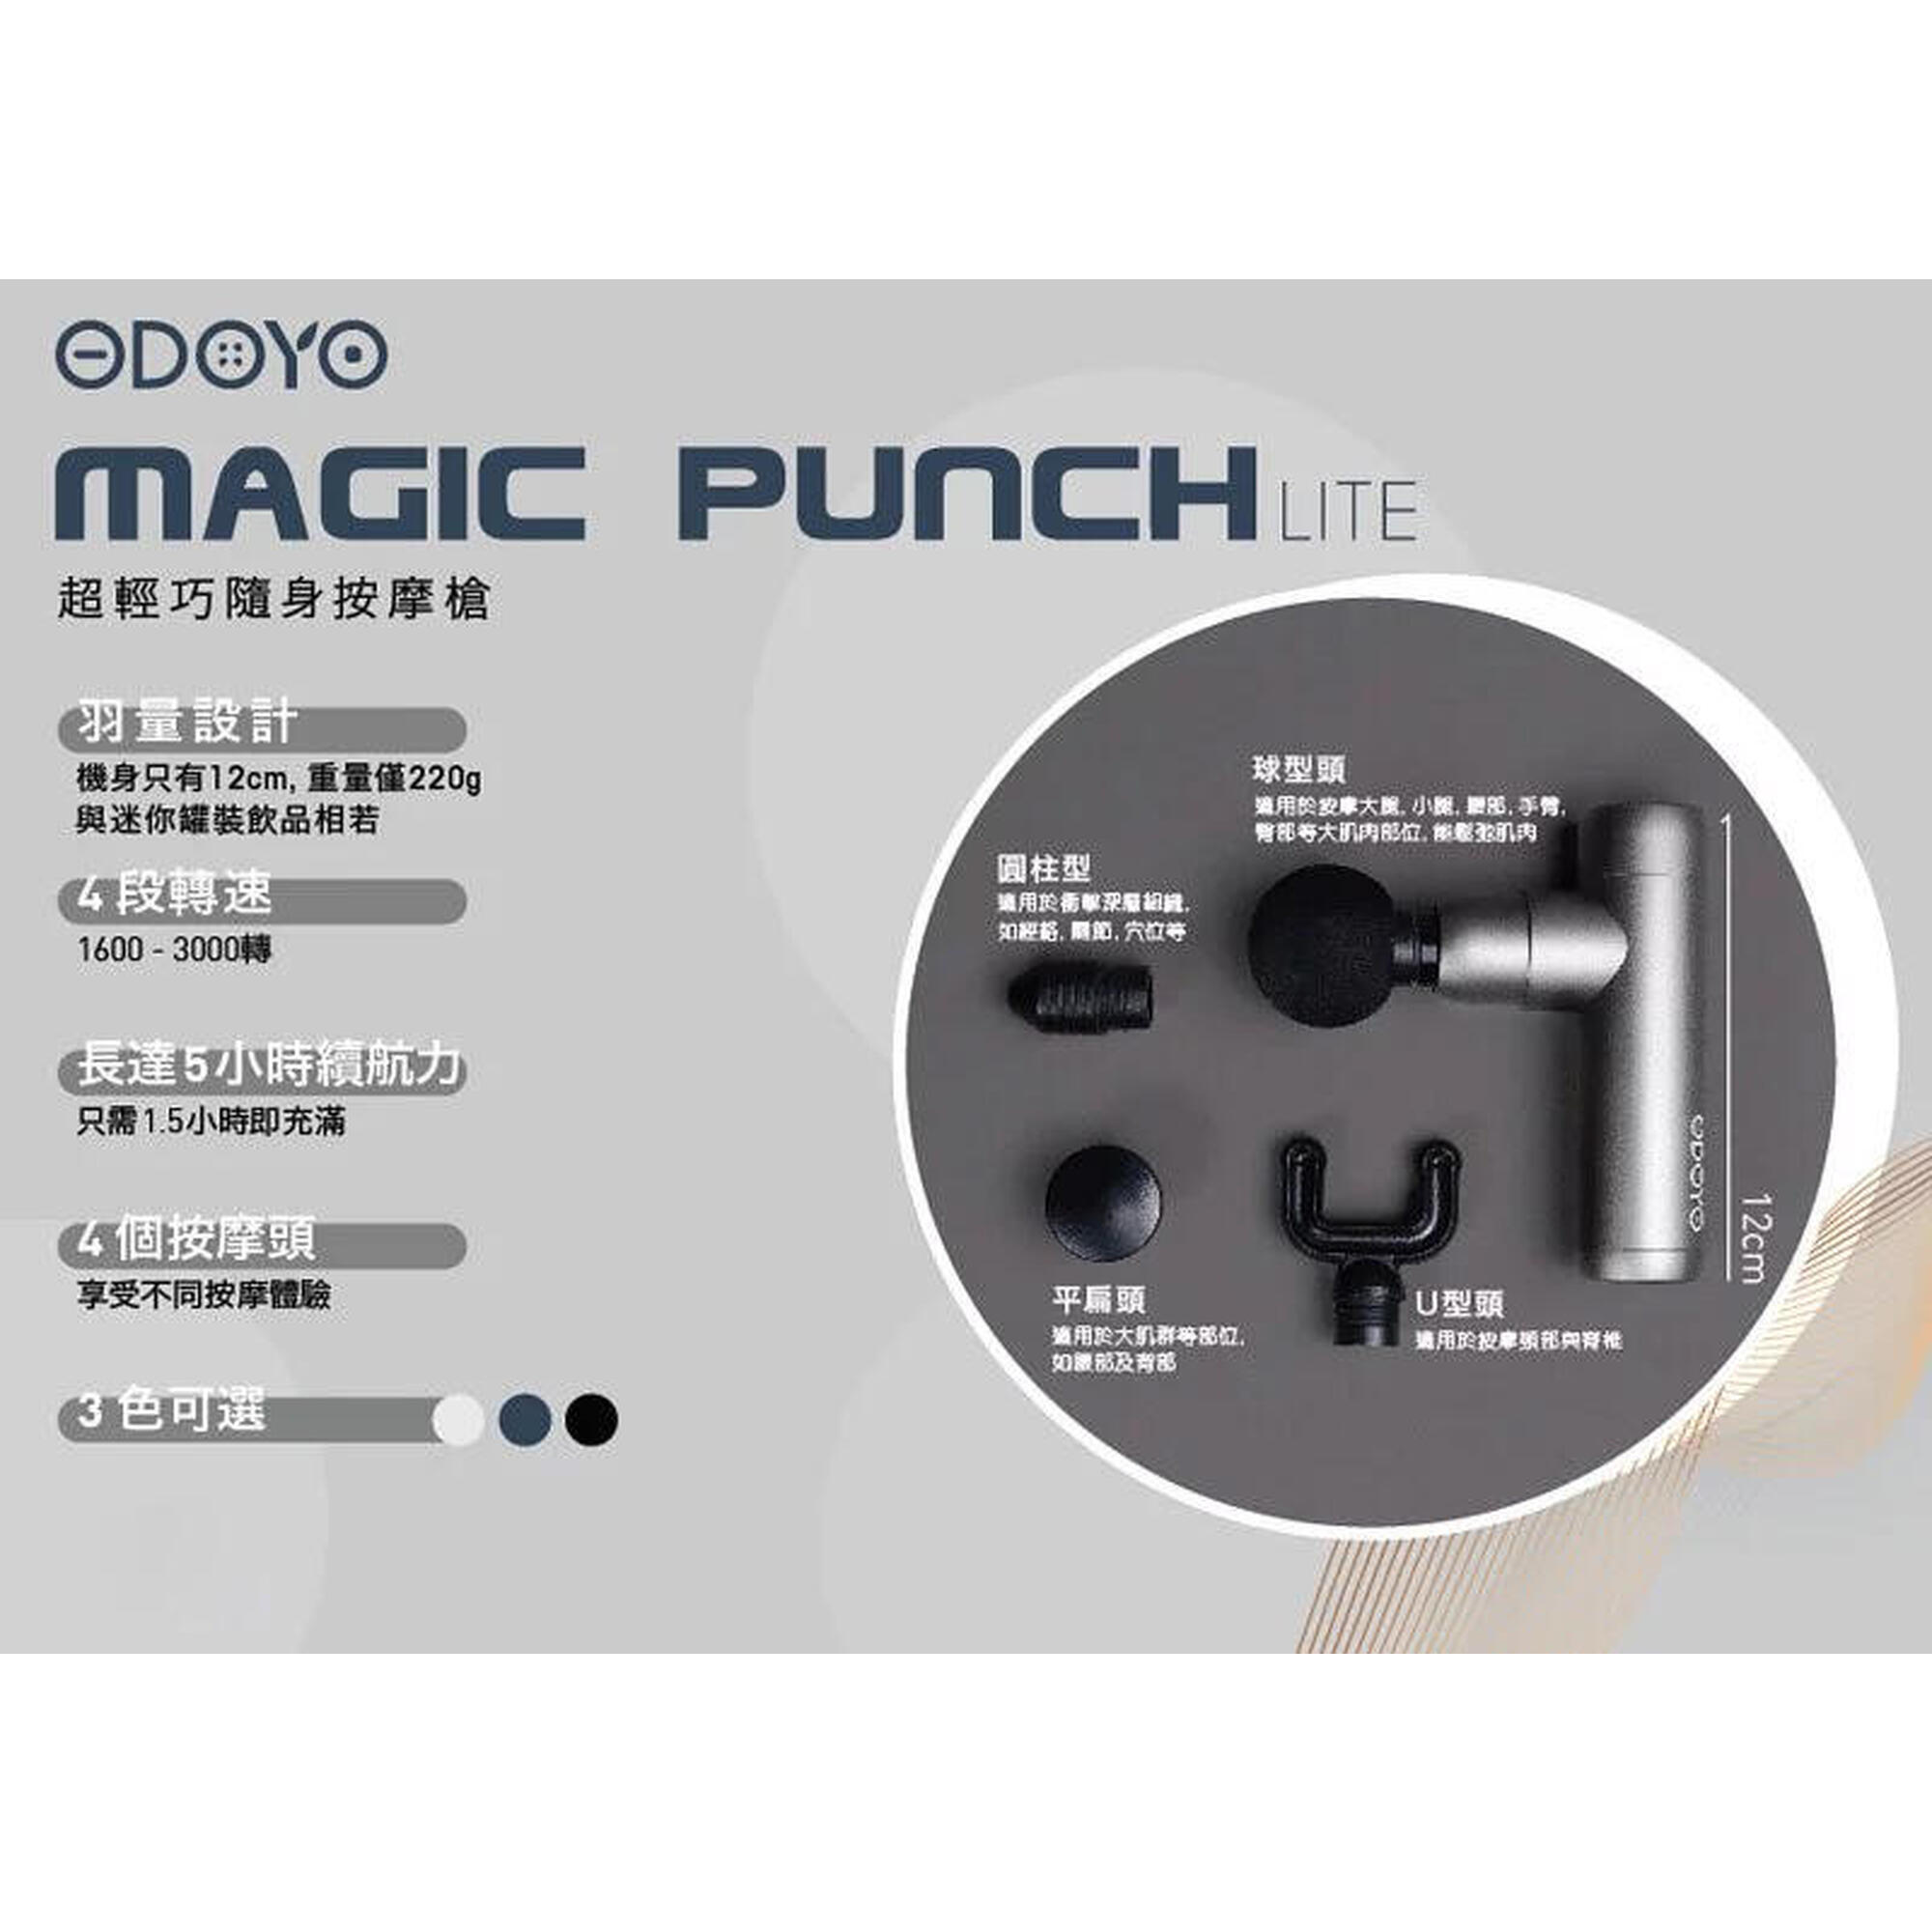 Magic Punch Lite Ultra-light Portable Massage Gun - Blue